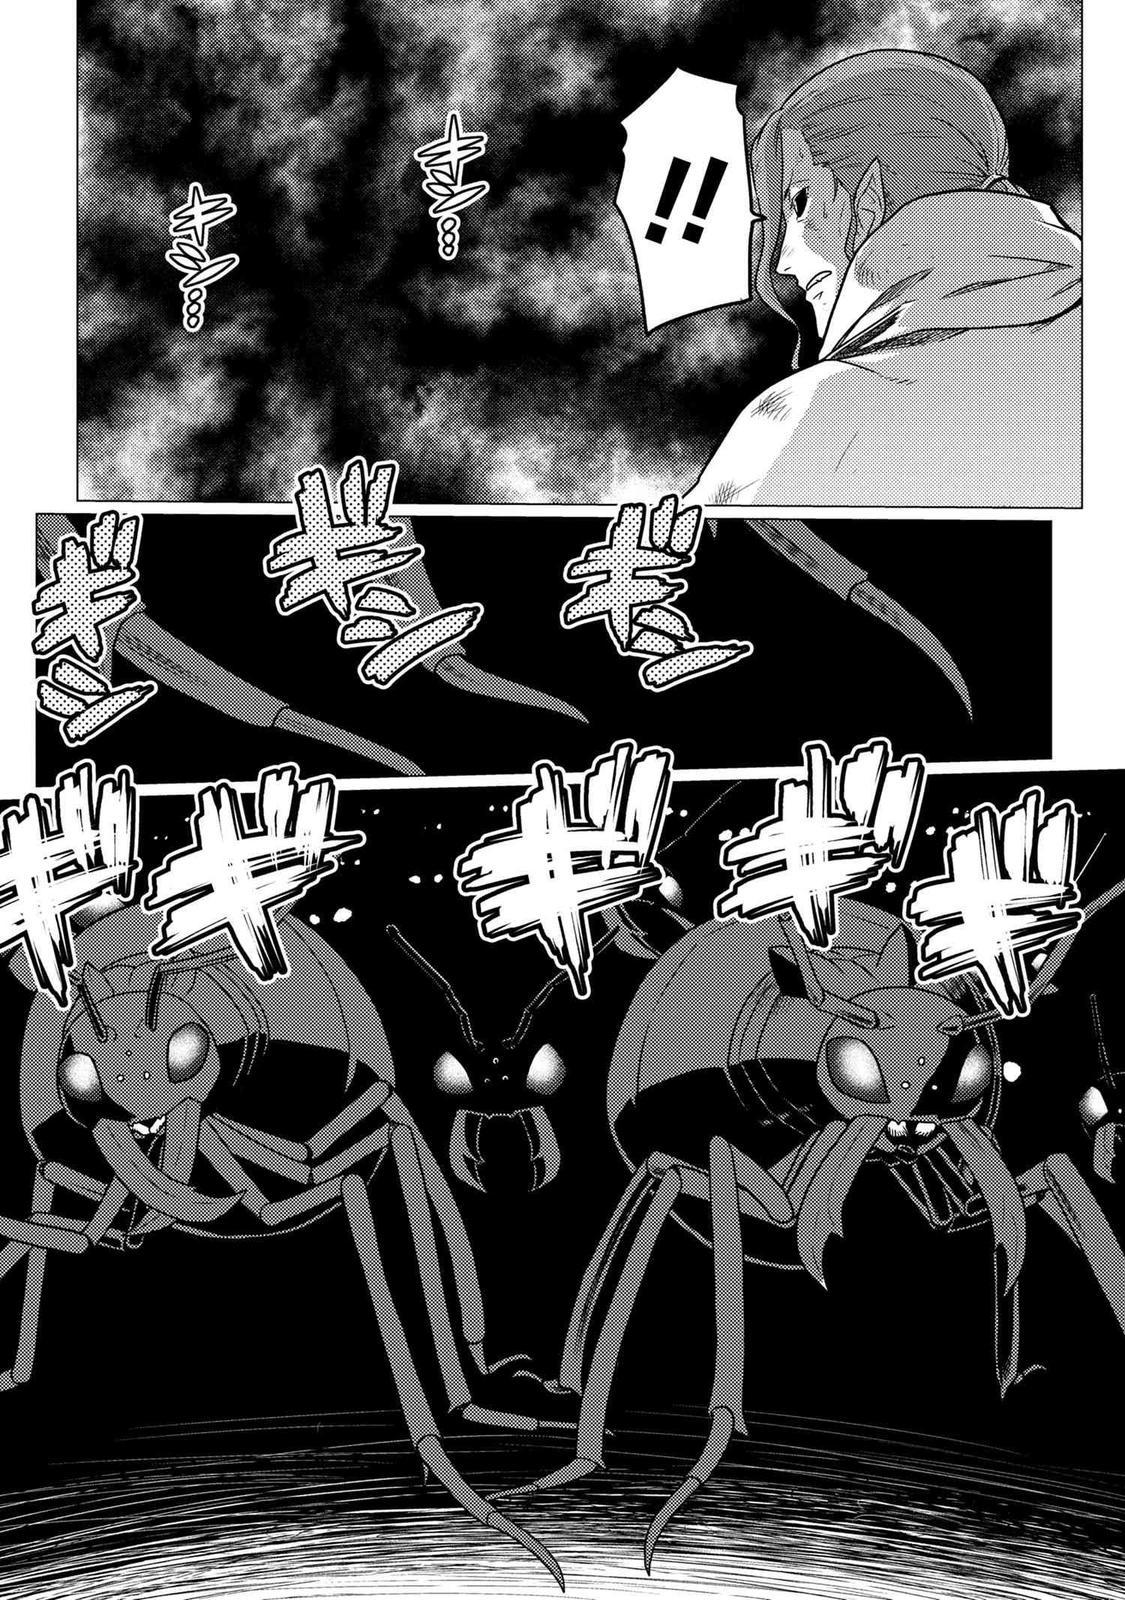 Kumo Desu ga, Nani ka?,So Im a Spider, So What??,manga,Kumo Desu ga, Nani ka? manga,So Im a Spider, So What?? manga